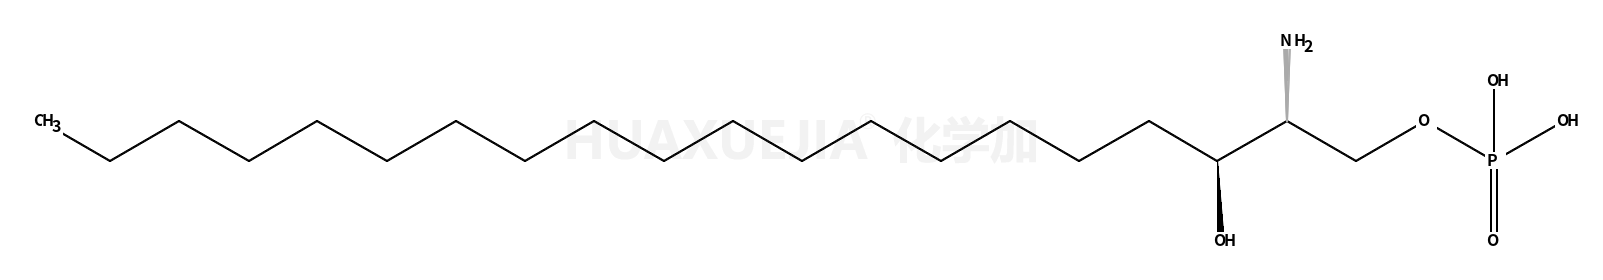 D-erythro-sphinganine-1-phosphate (C20 base)